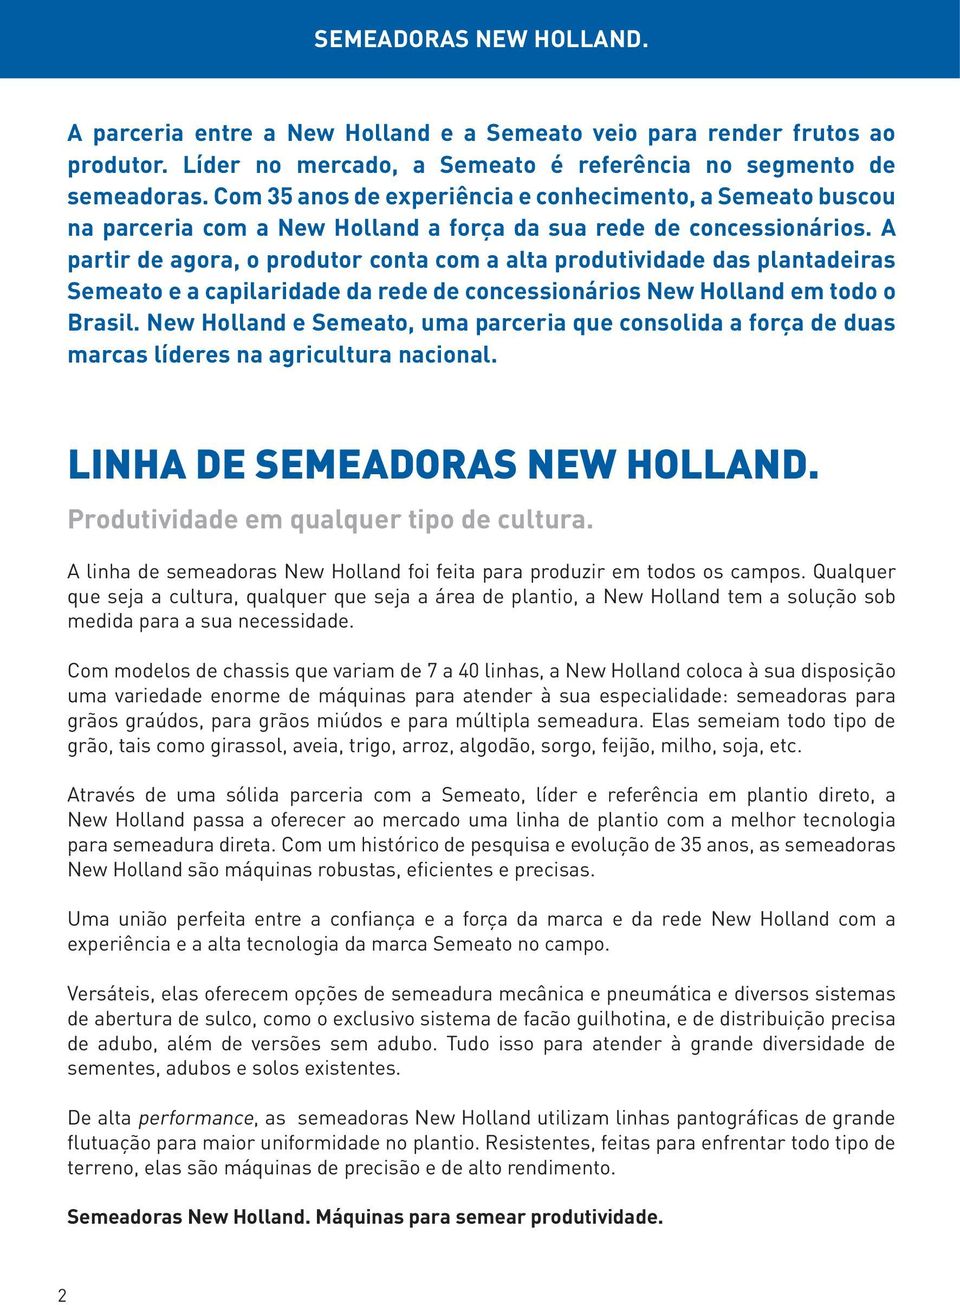 A partir de agora, o produtor conta com a alta produtividade das plantadeiras Semeato e a capilaridade da rede de concessionários New Holland em todo o Brasil.